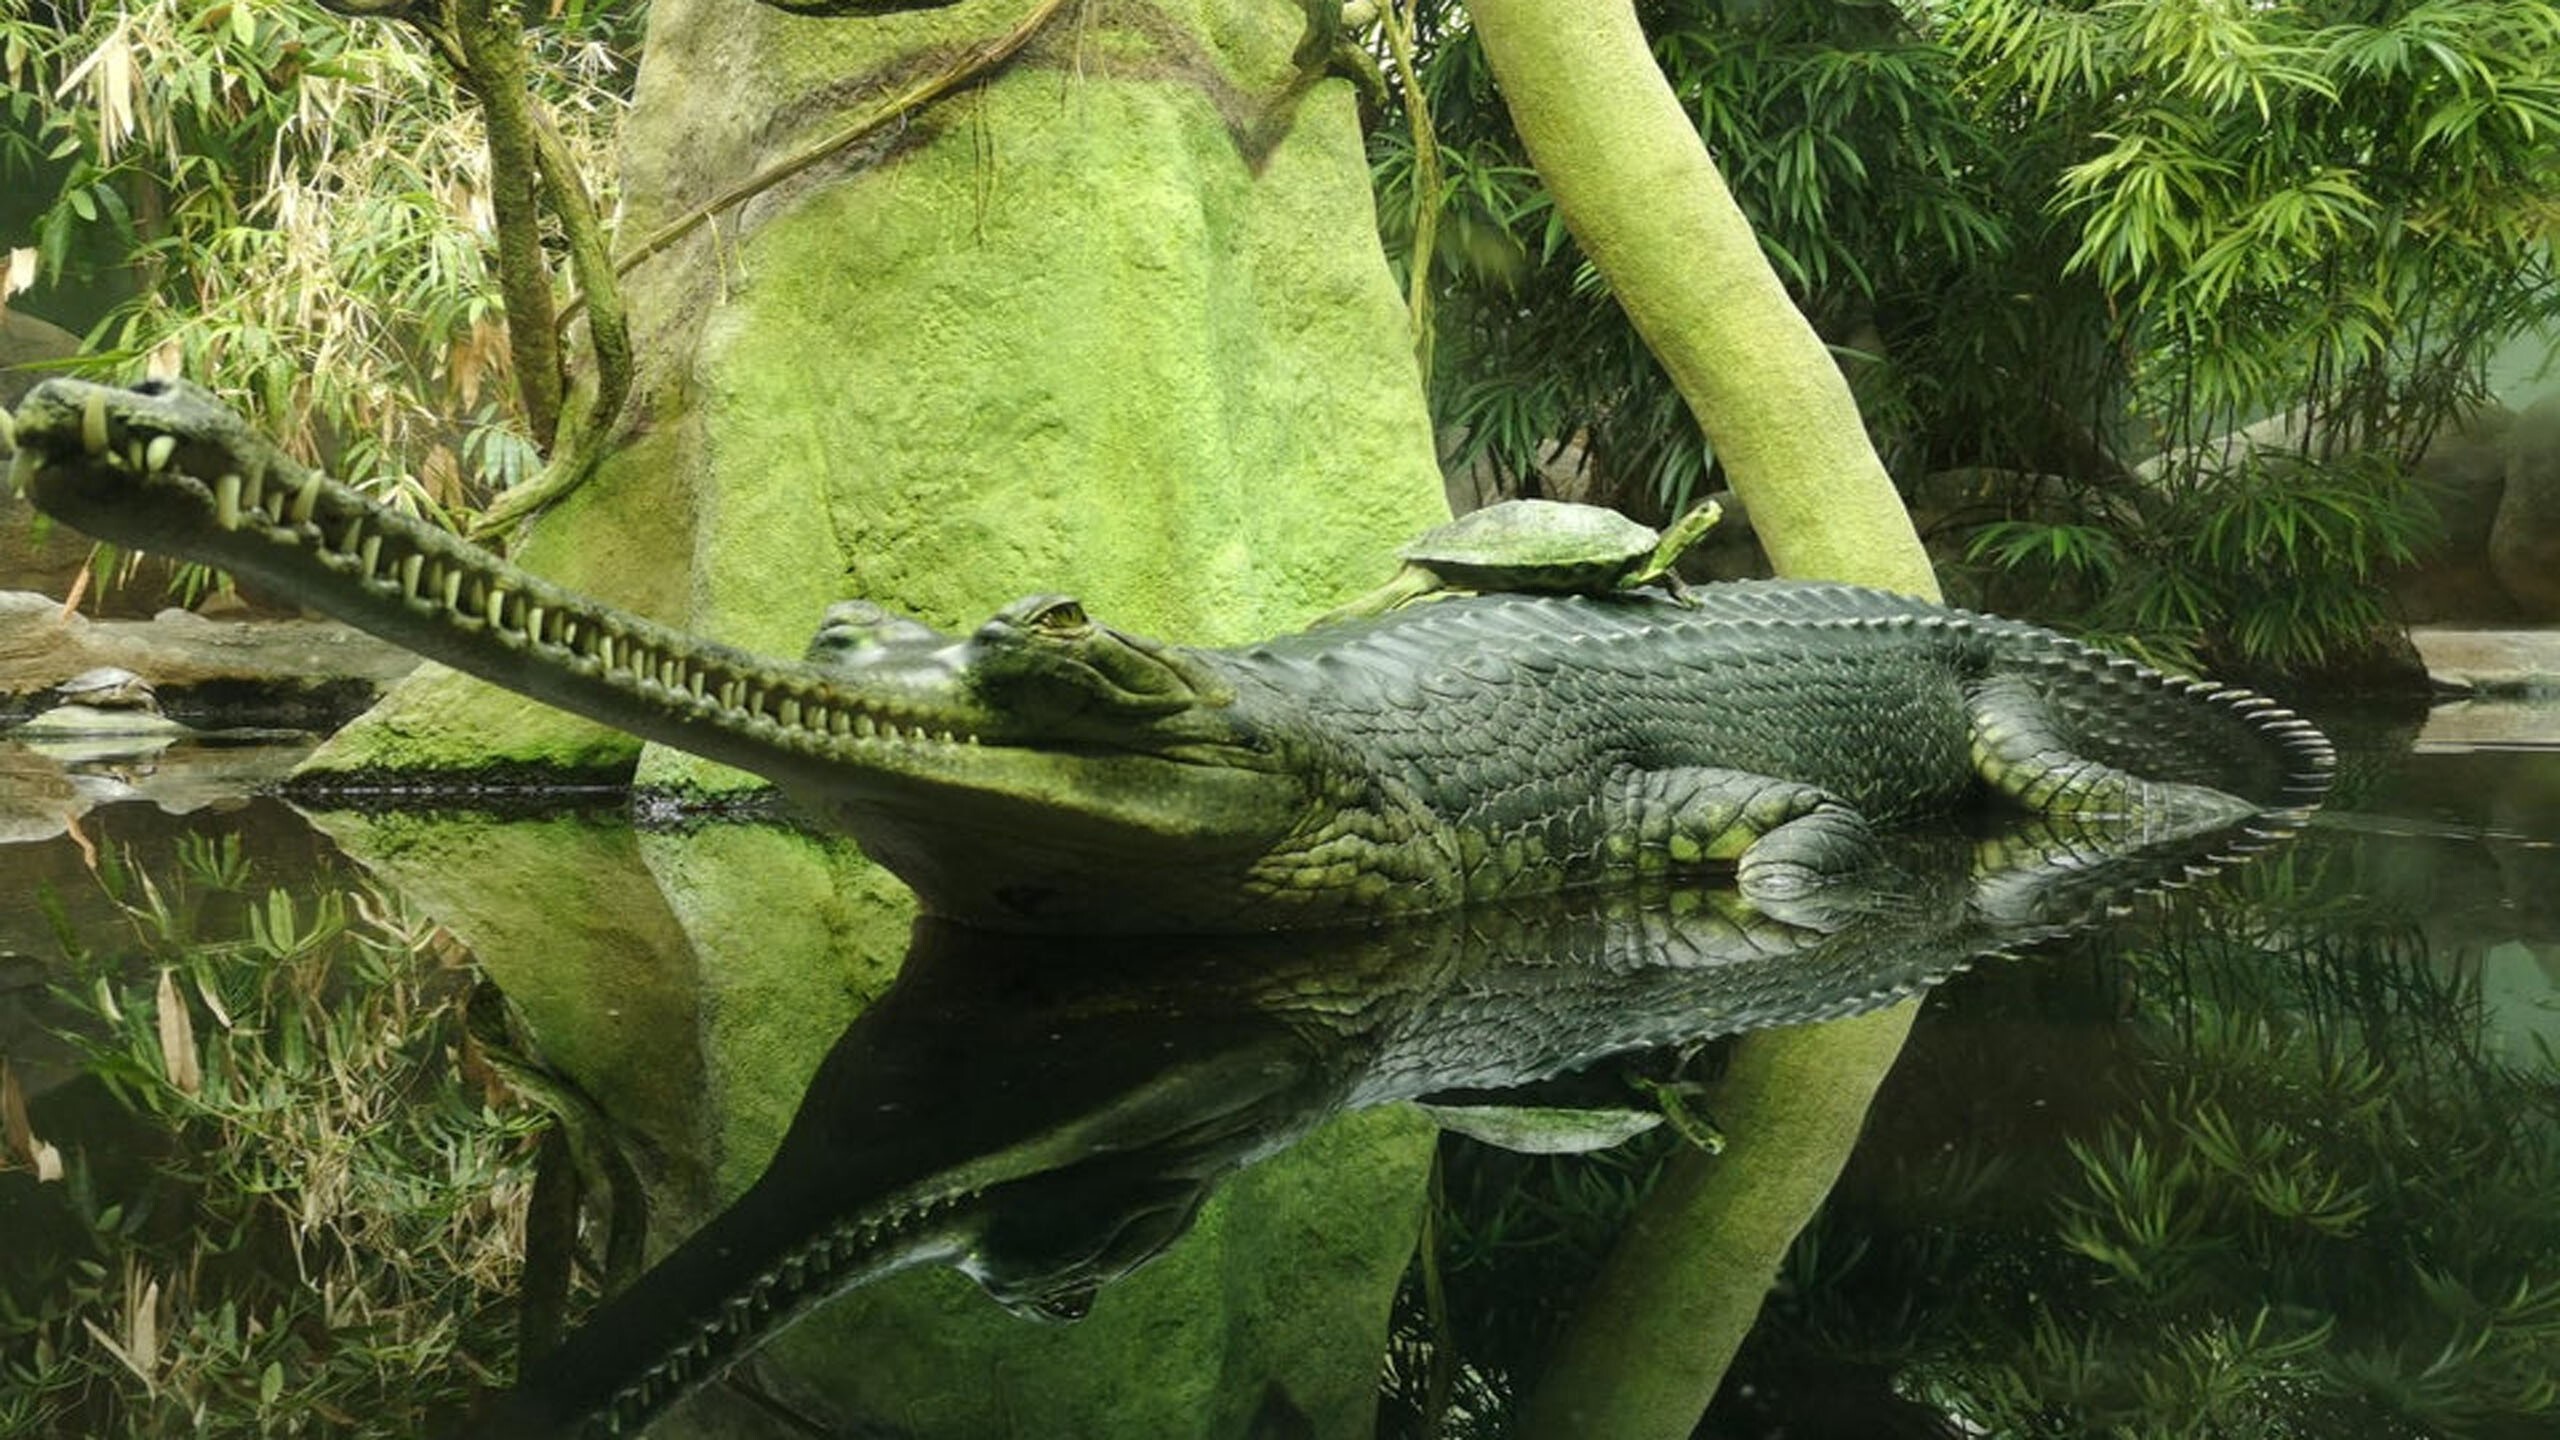 Гавиал крокодил. описание, особенности, виды, образ жизни и среда обитания гавиала